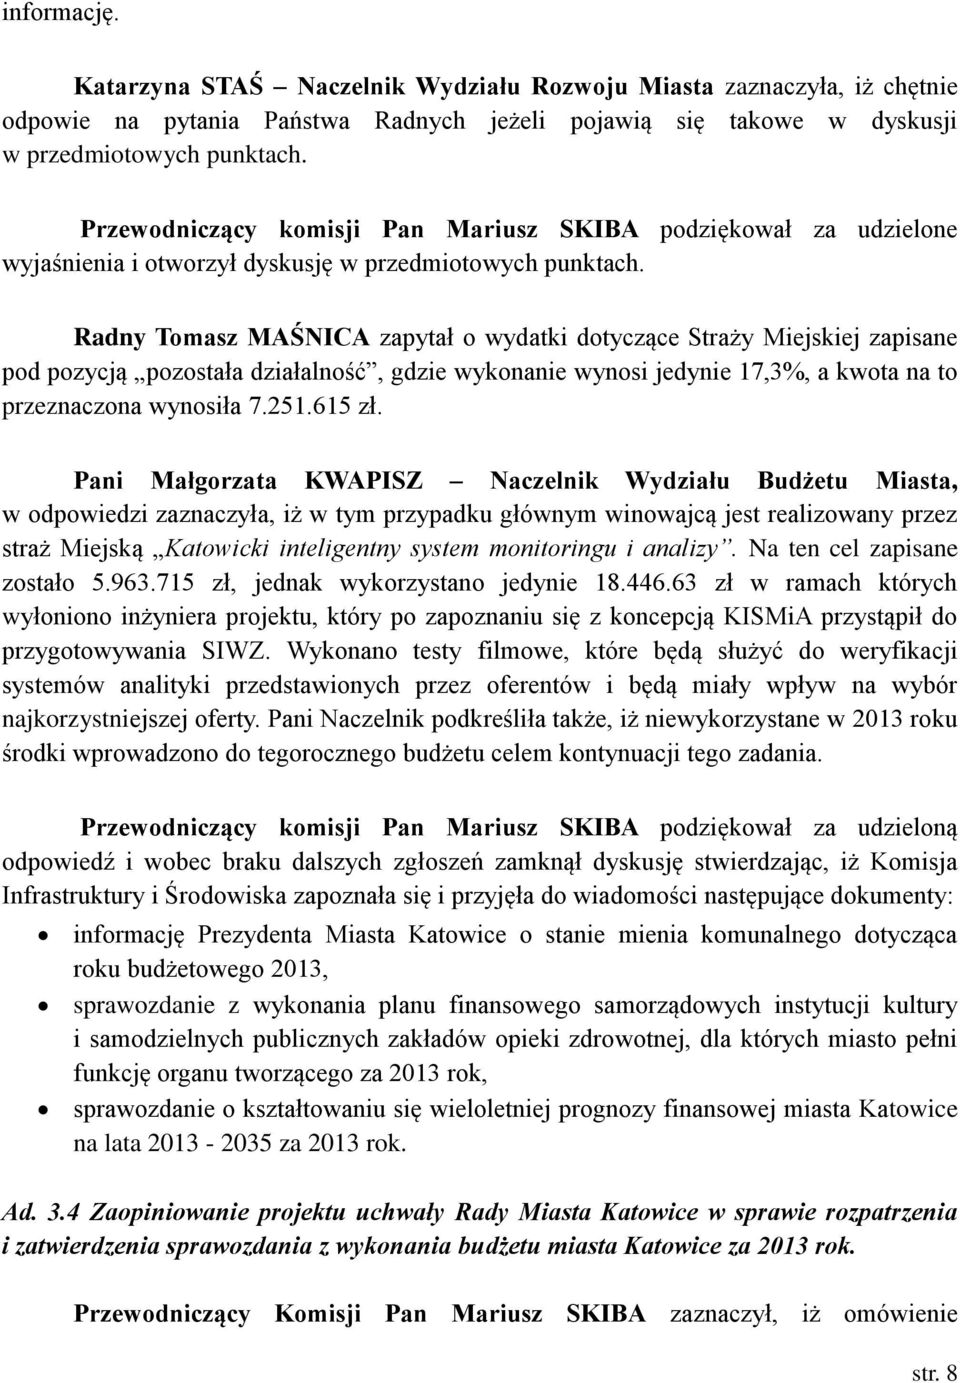 Radny Tomasz MAŚNICA zapytał o wydatki dotyczące Straży Miejskiej zapisane pod pozycją pozostała działalność, gdzie wykonanie wynosi jedynie 17,3%, a kwota na to przeznaczona wynosiła 7.251.615 zł.